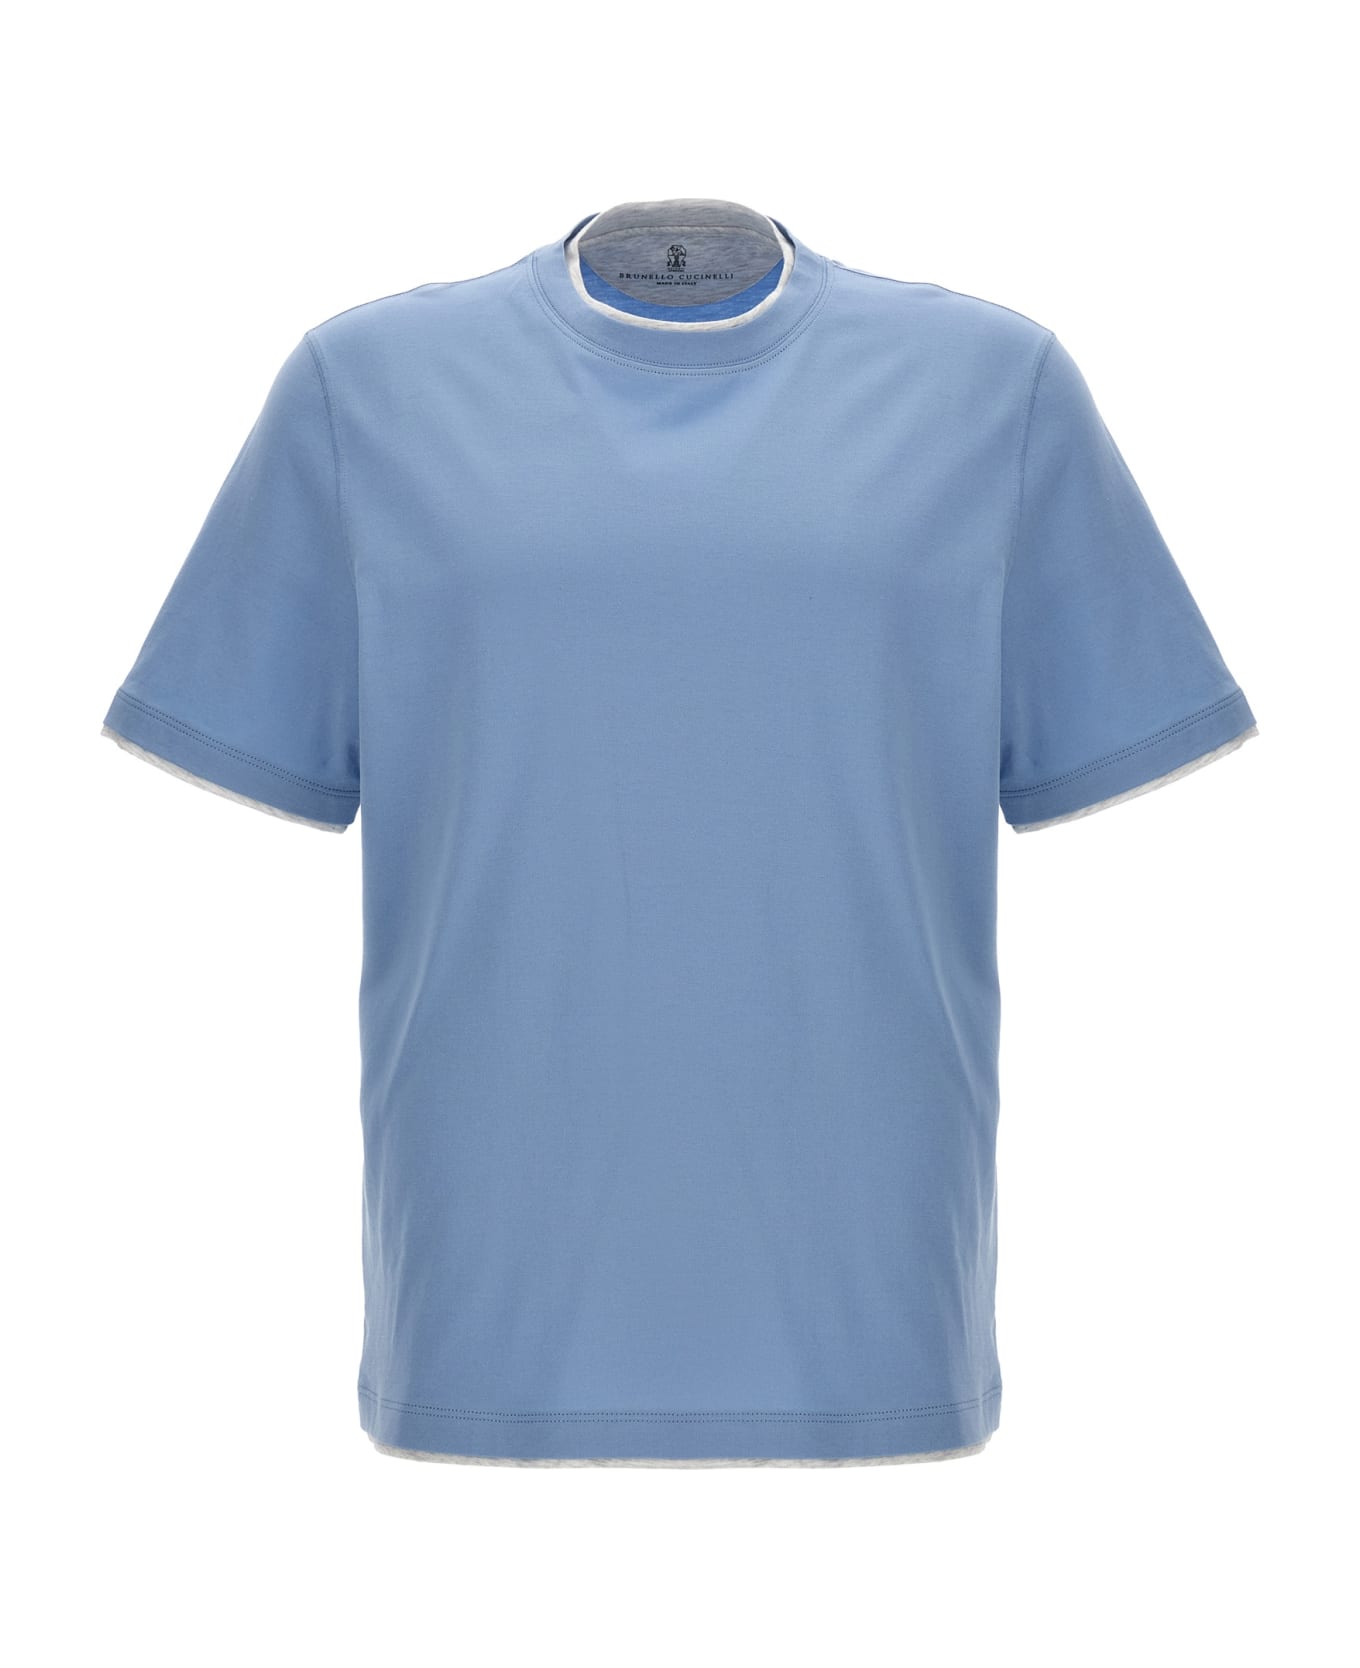 Brunello Cucinelli Layered T-shirt - Light Blue